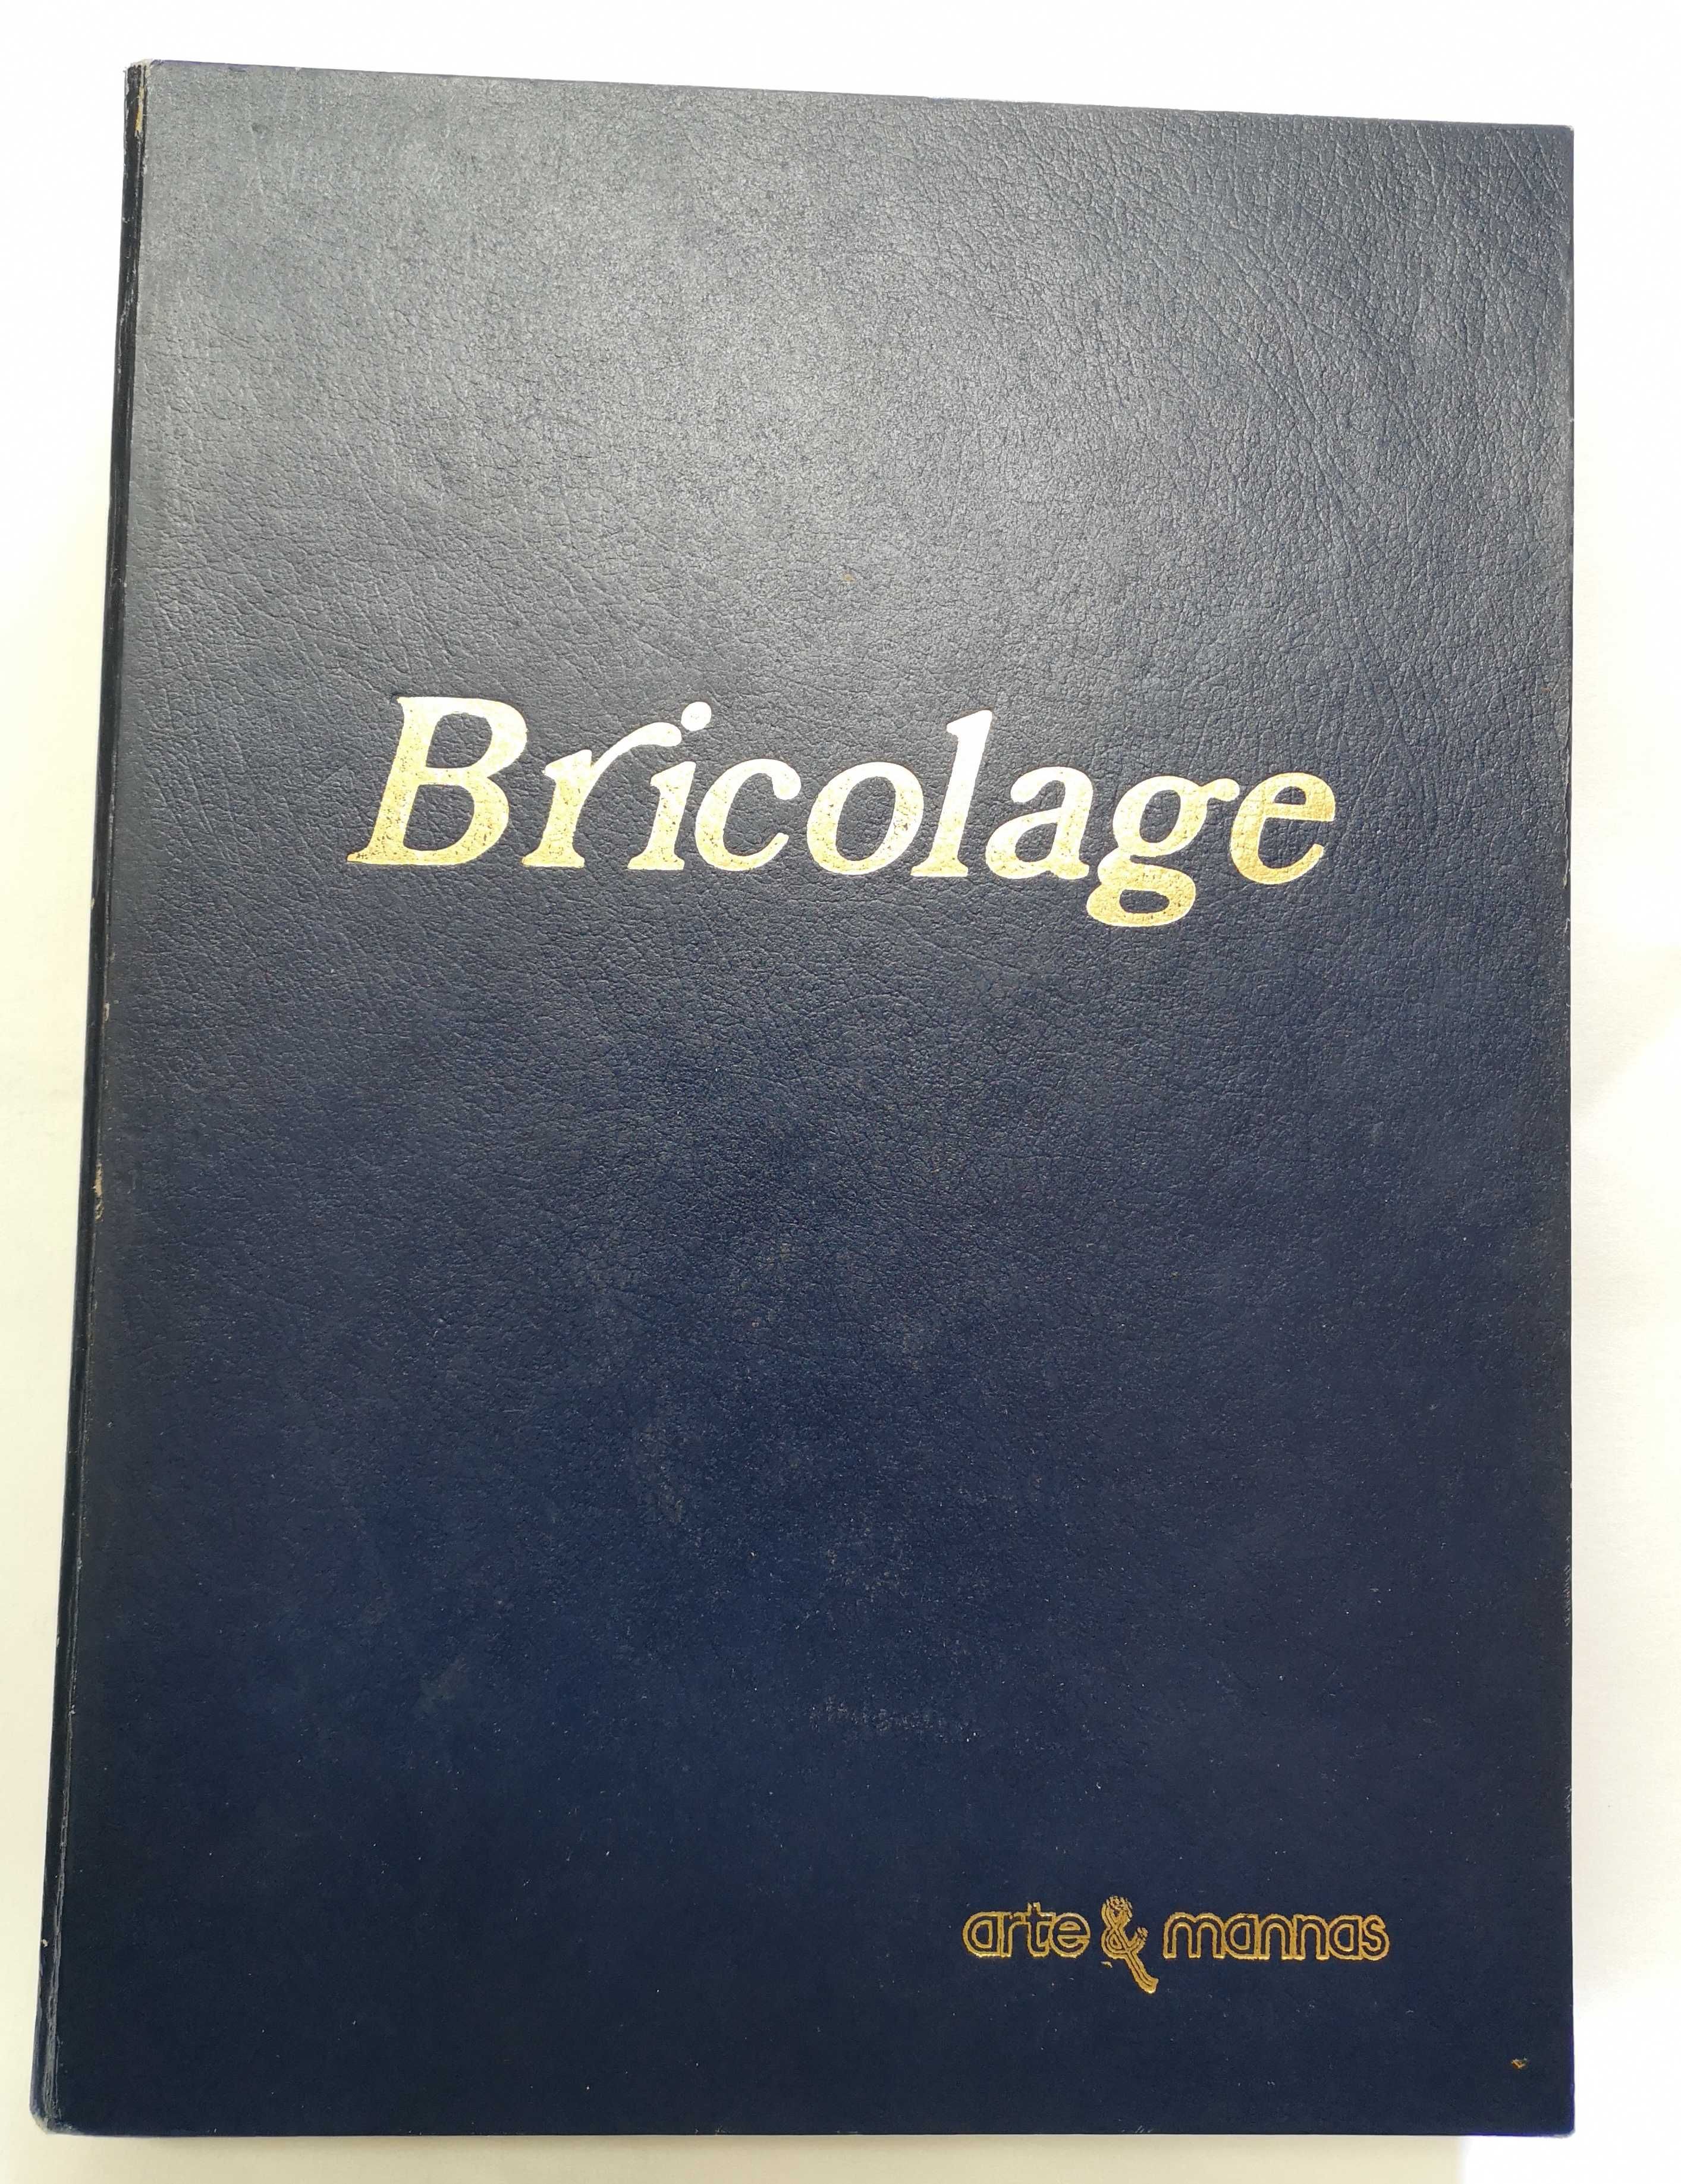 BRICOLAGE_11 números da revista Arte&Manhas, encadernados em 1 volume